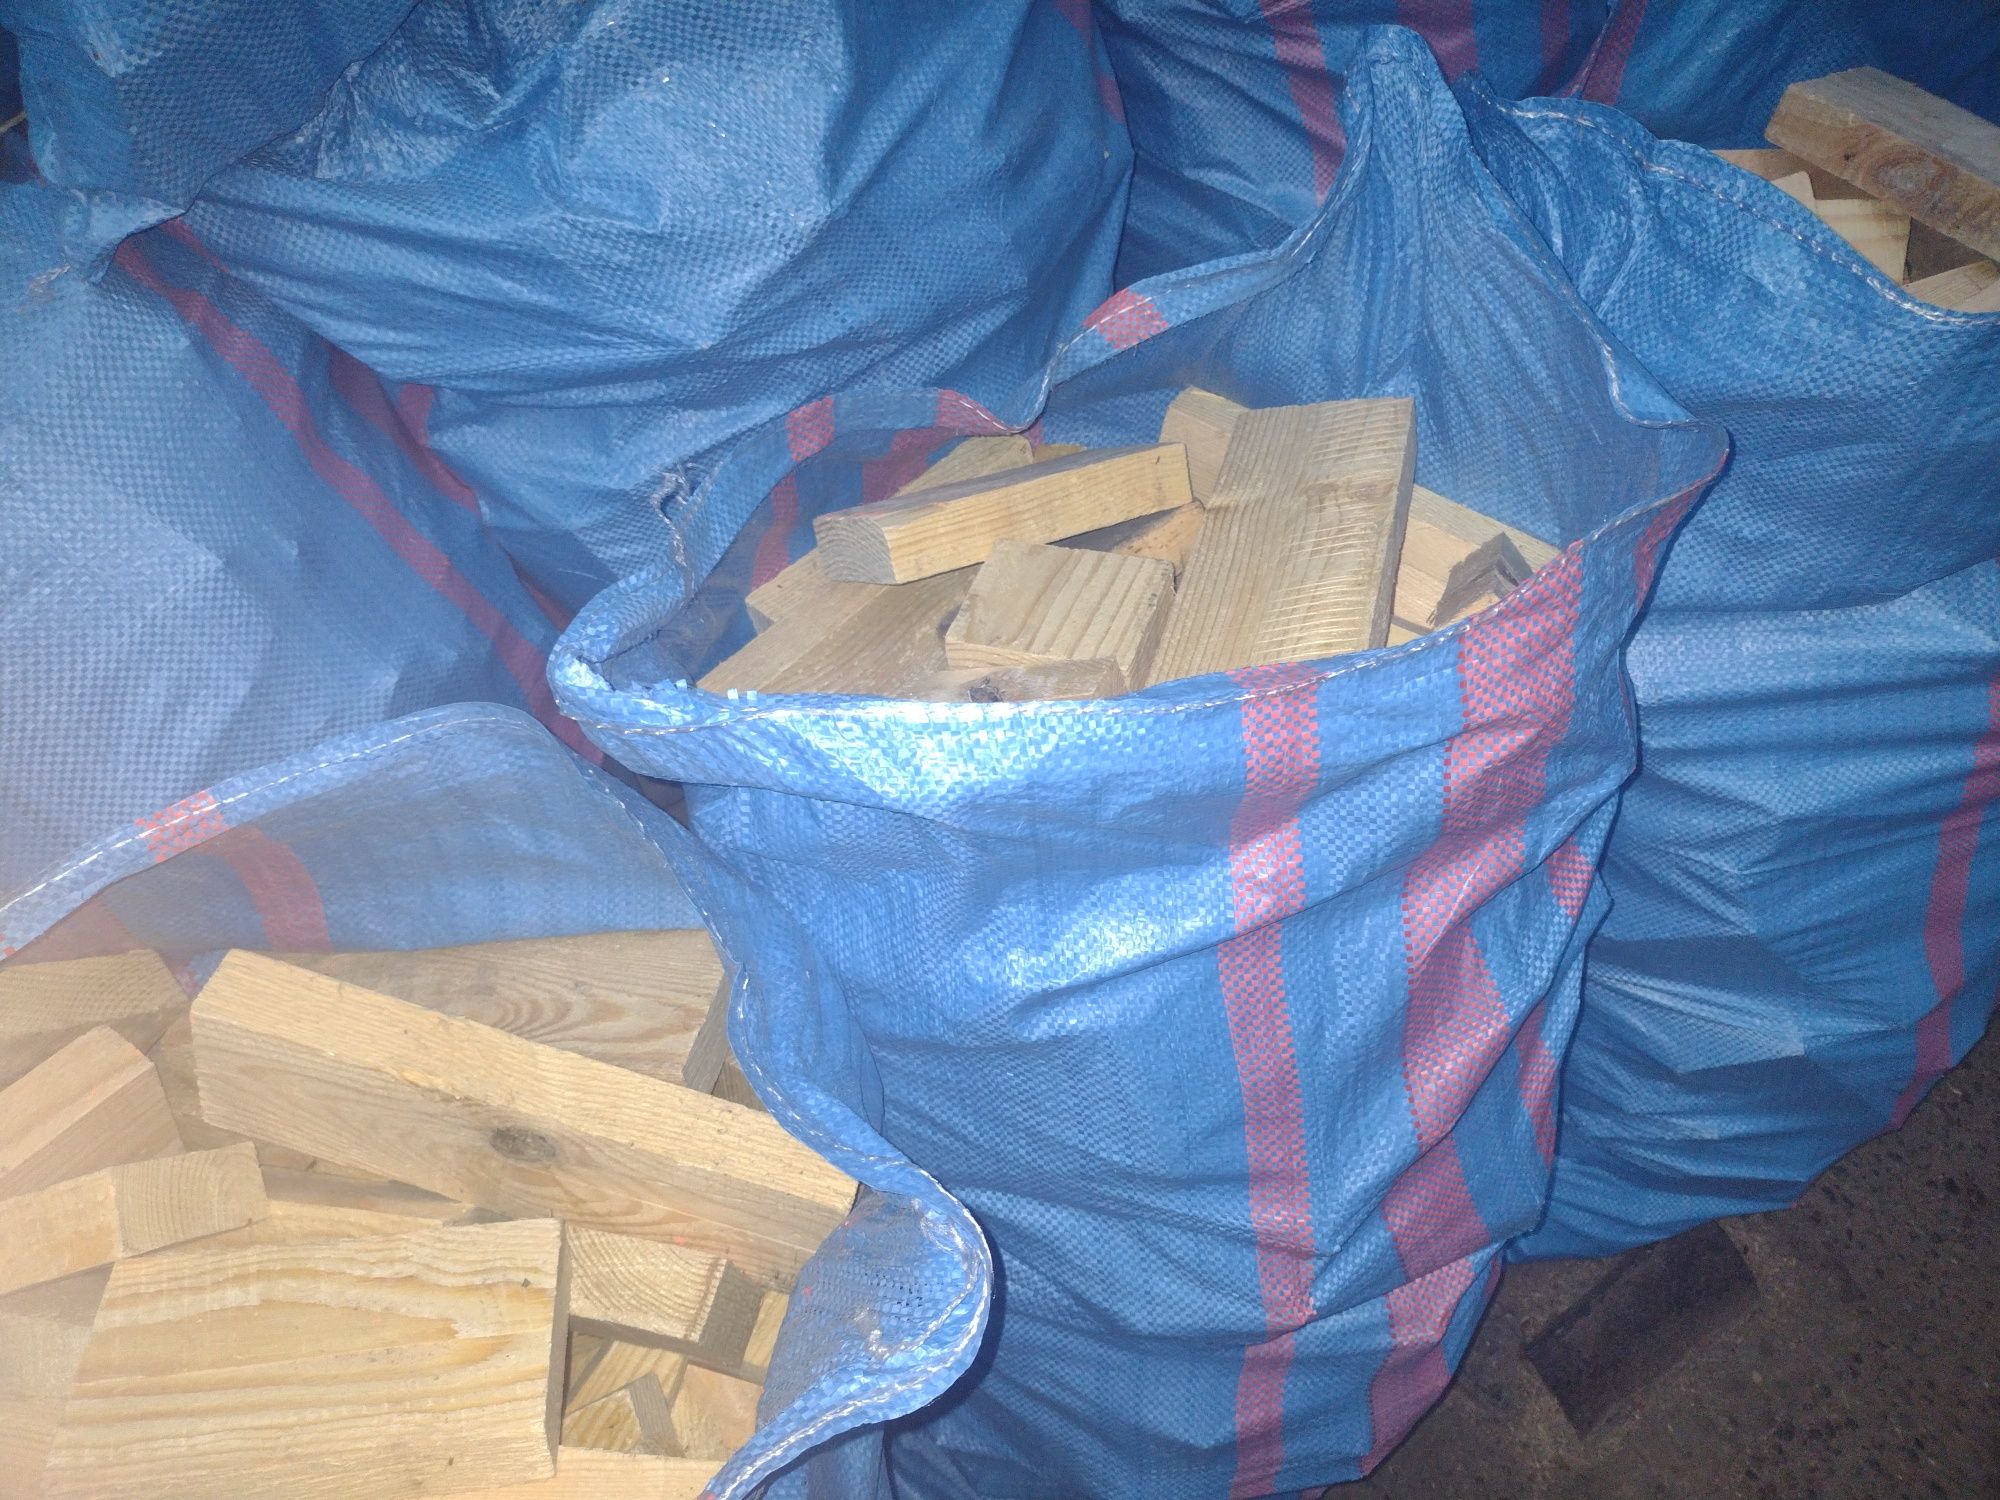 Drewno opałowe zapakowane w worki